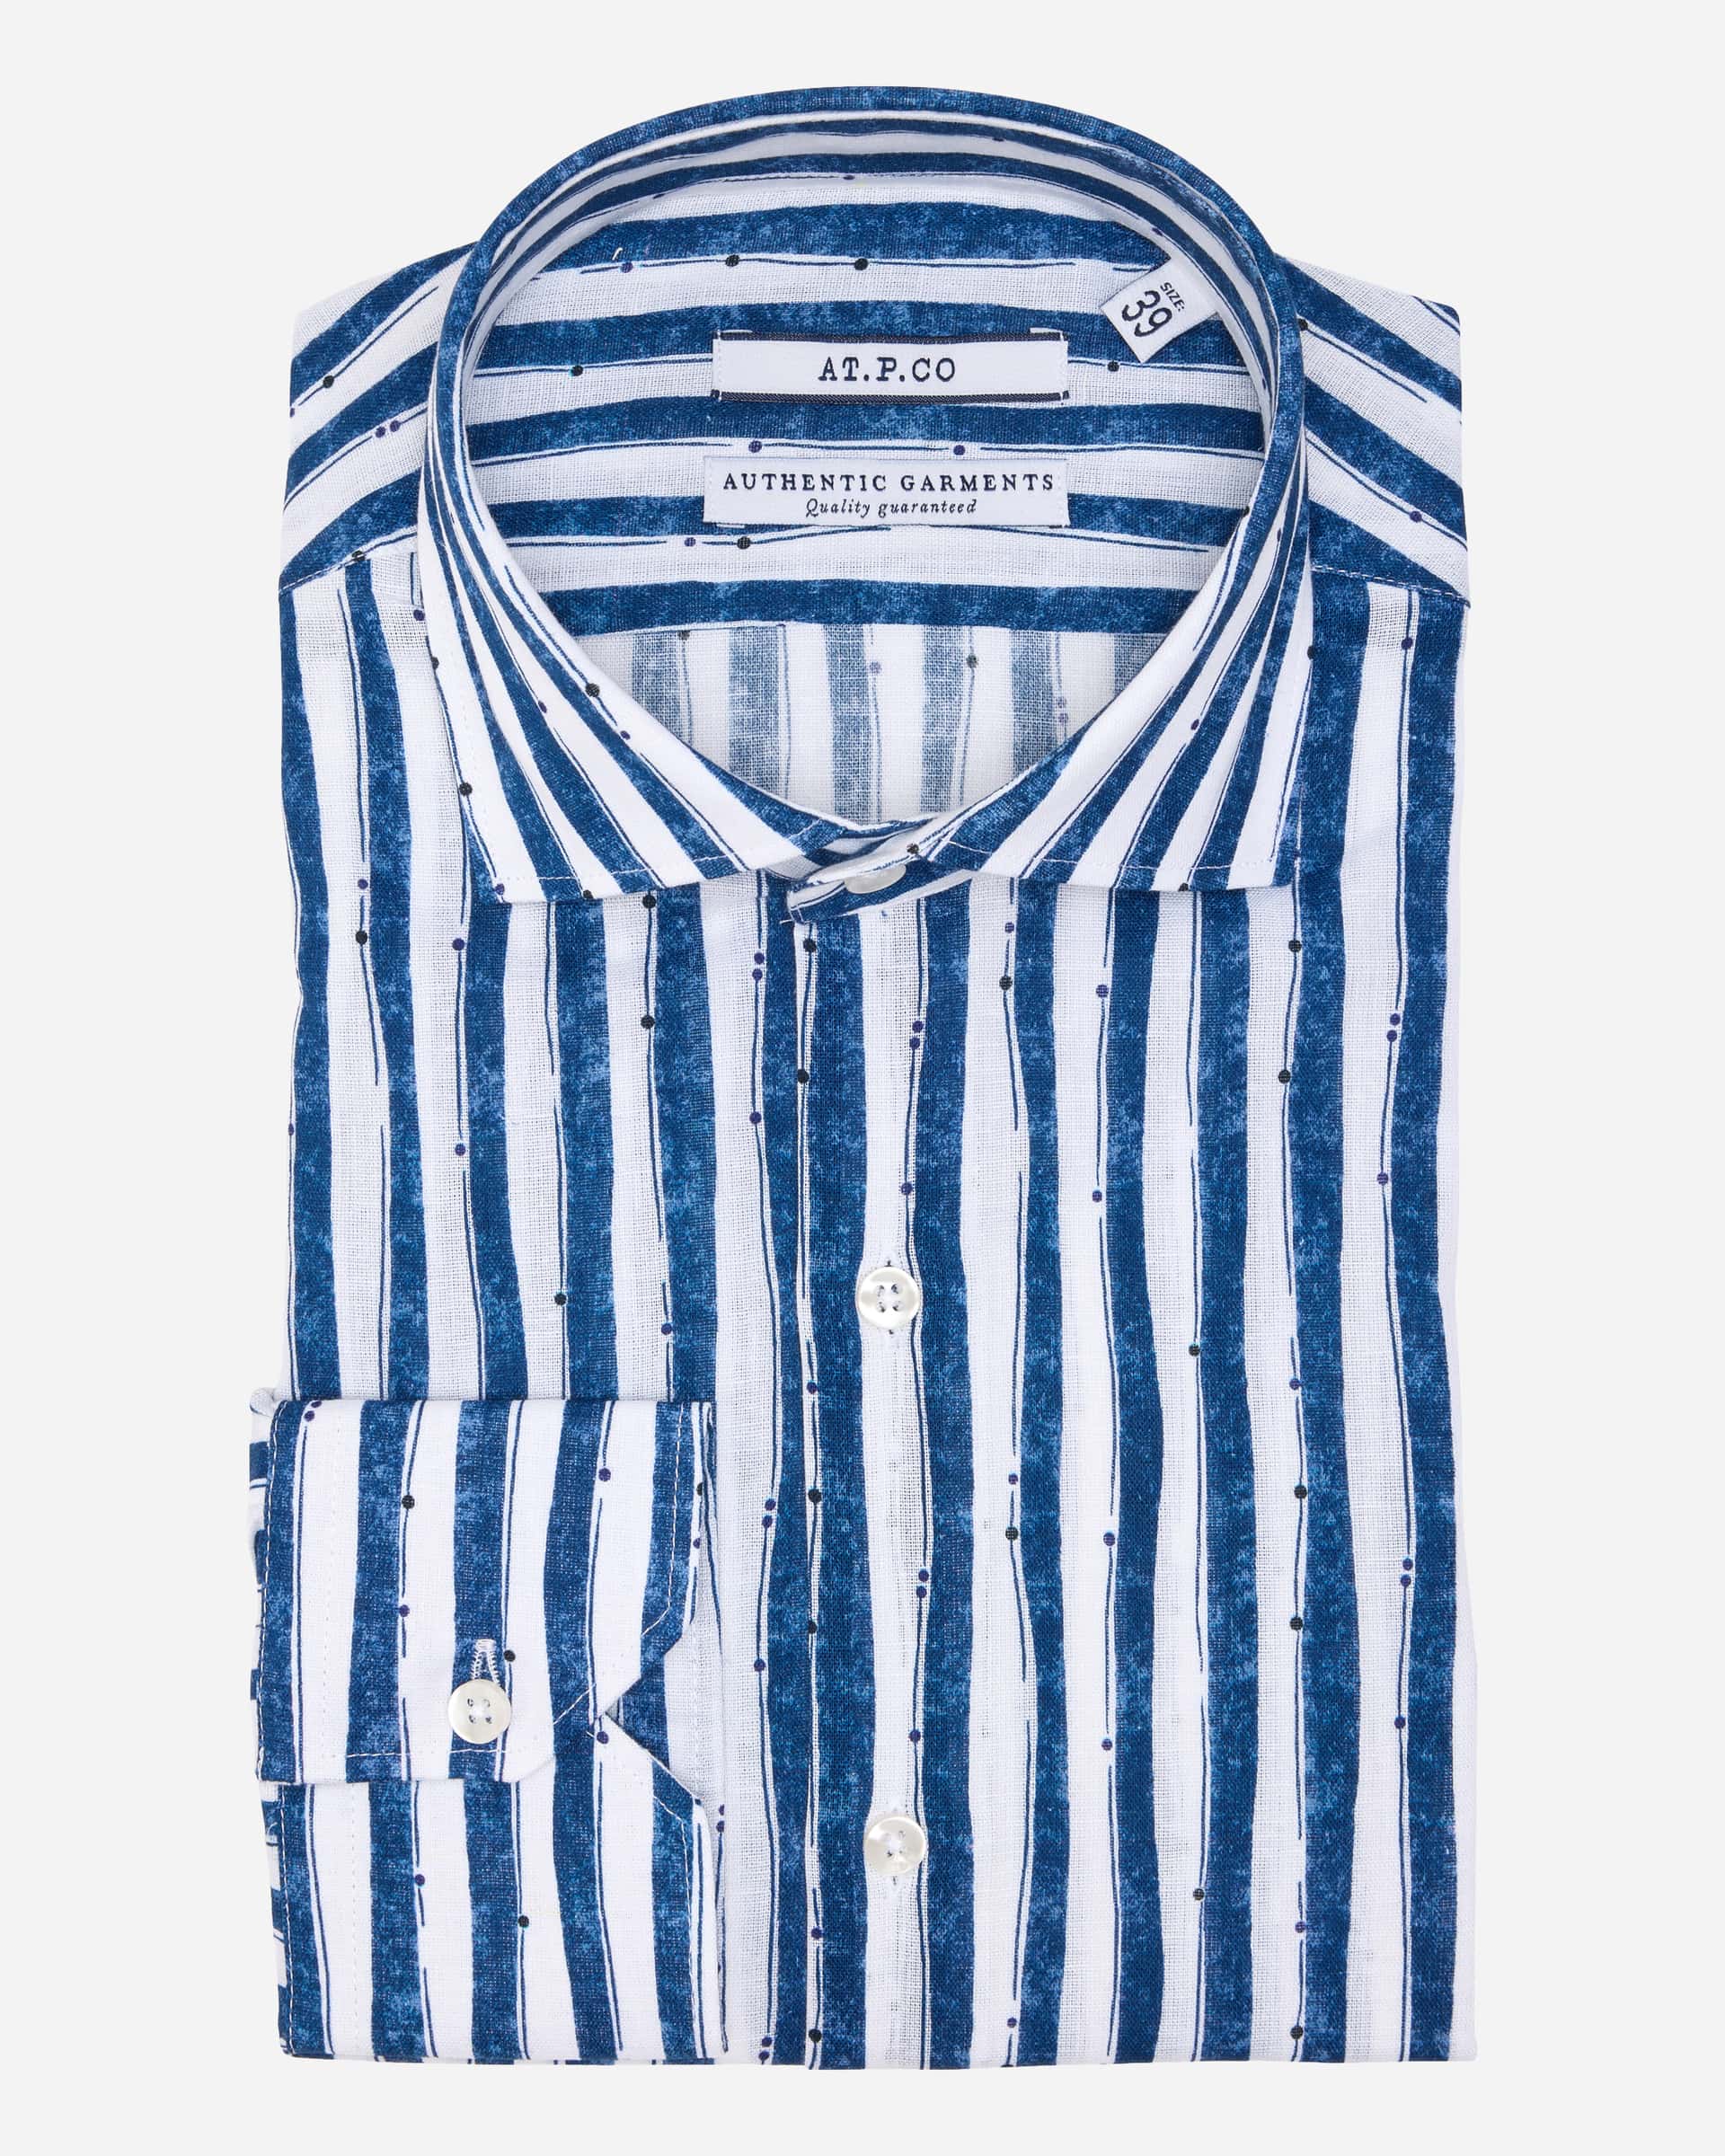 Paint Stripe Linen - Men's Casual Shirts at Menzclub